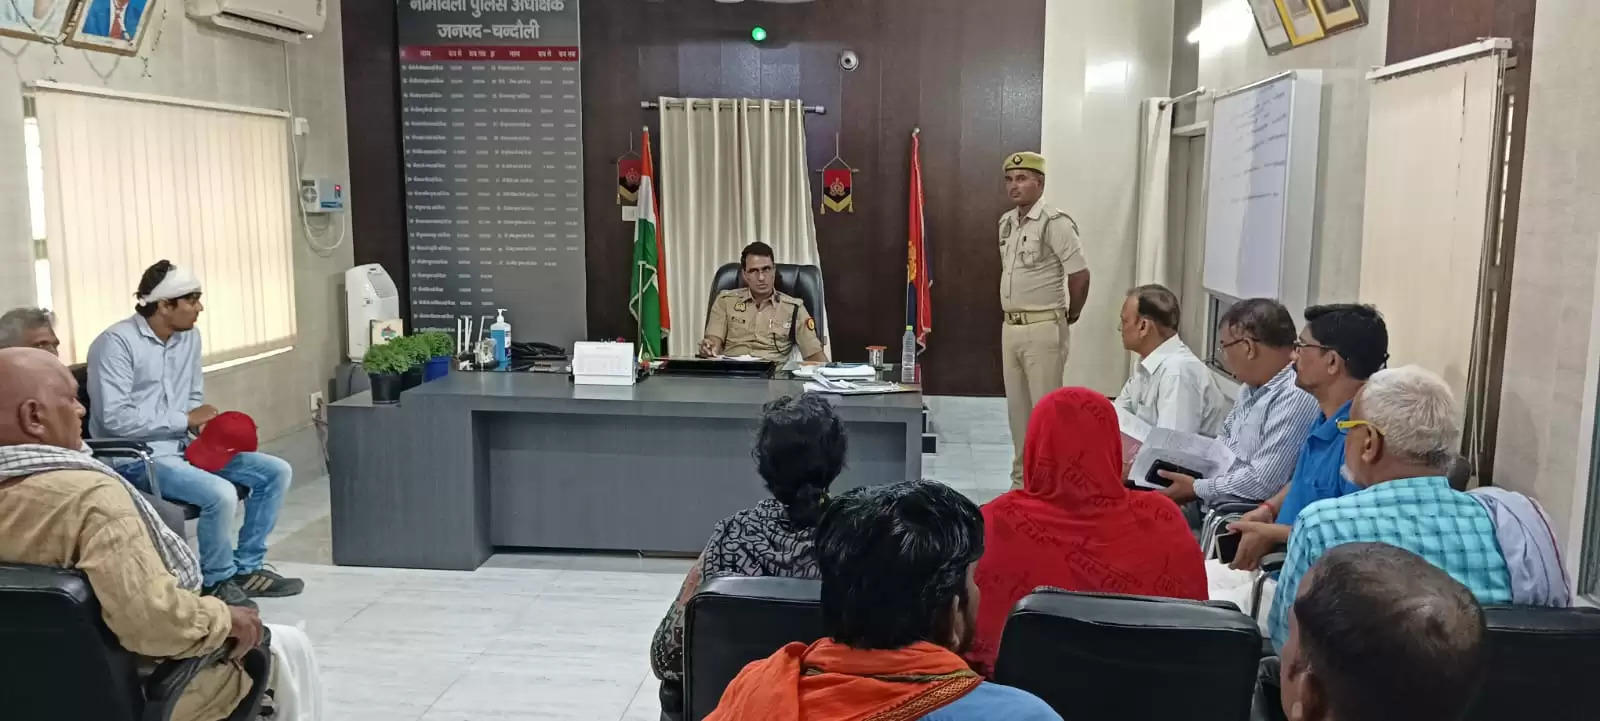 Chandauli News: पुलिस अधीक्षक चन्दौली द्वारा प्रतिदिन की भांति पुलिस कार्यालय में जनता दर्शन में आए फरियादियों की सुनी जा रही समस्याएं